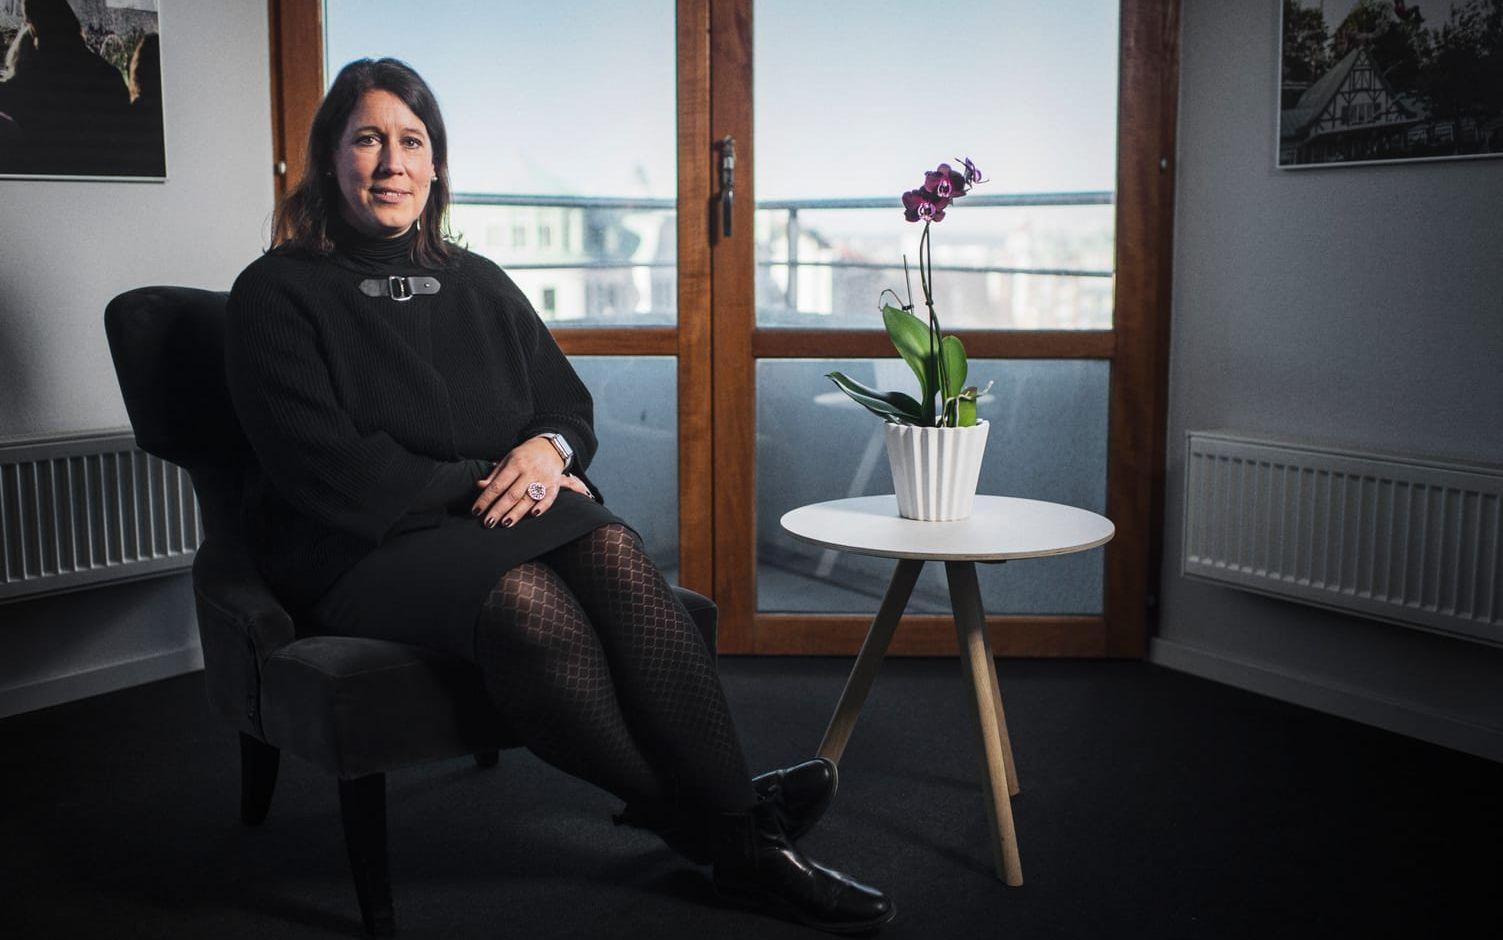 Camilla Nyman, vd för Göteborg&Co, siktar nu på att fördubbla gästnätterna i Göteborgsregionen till 2030. Bild: Oliver Lindkvist